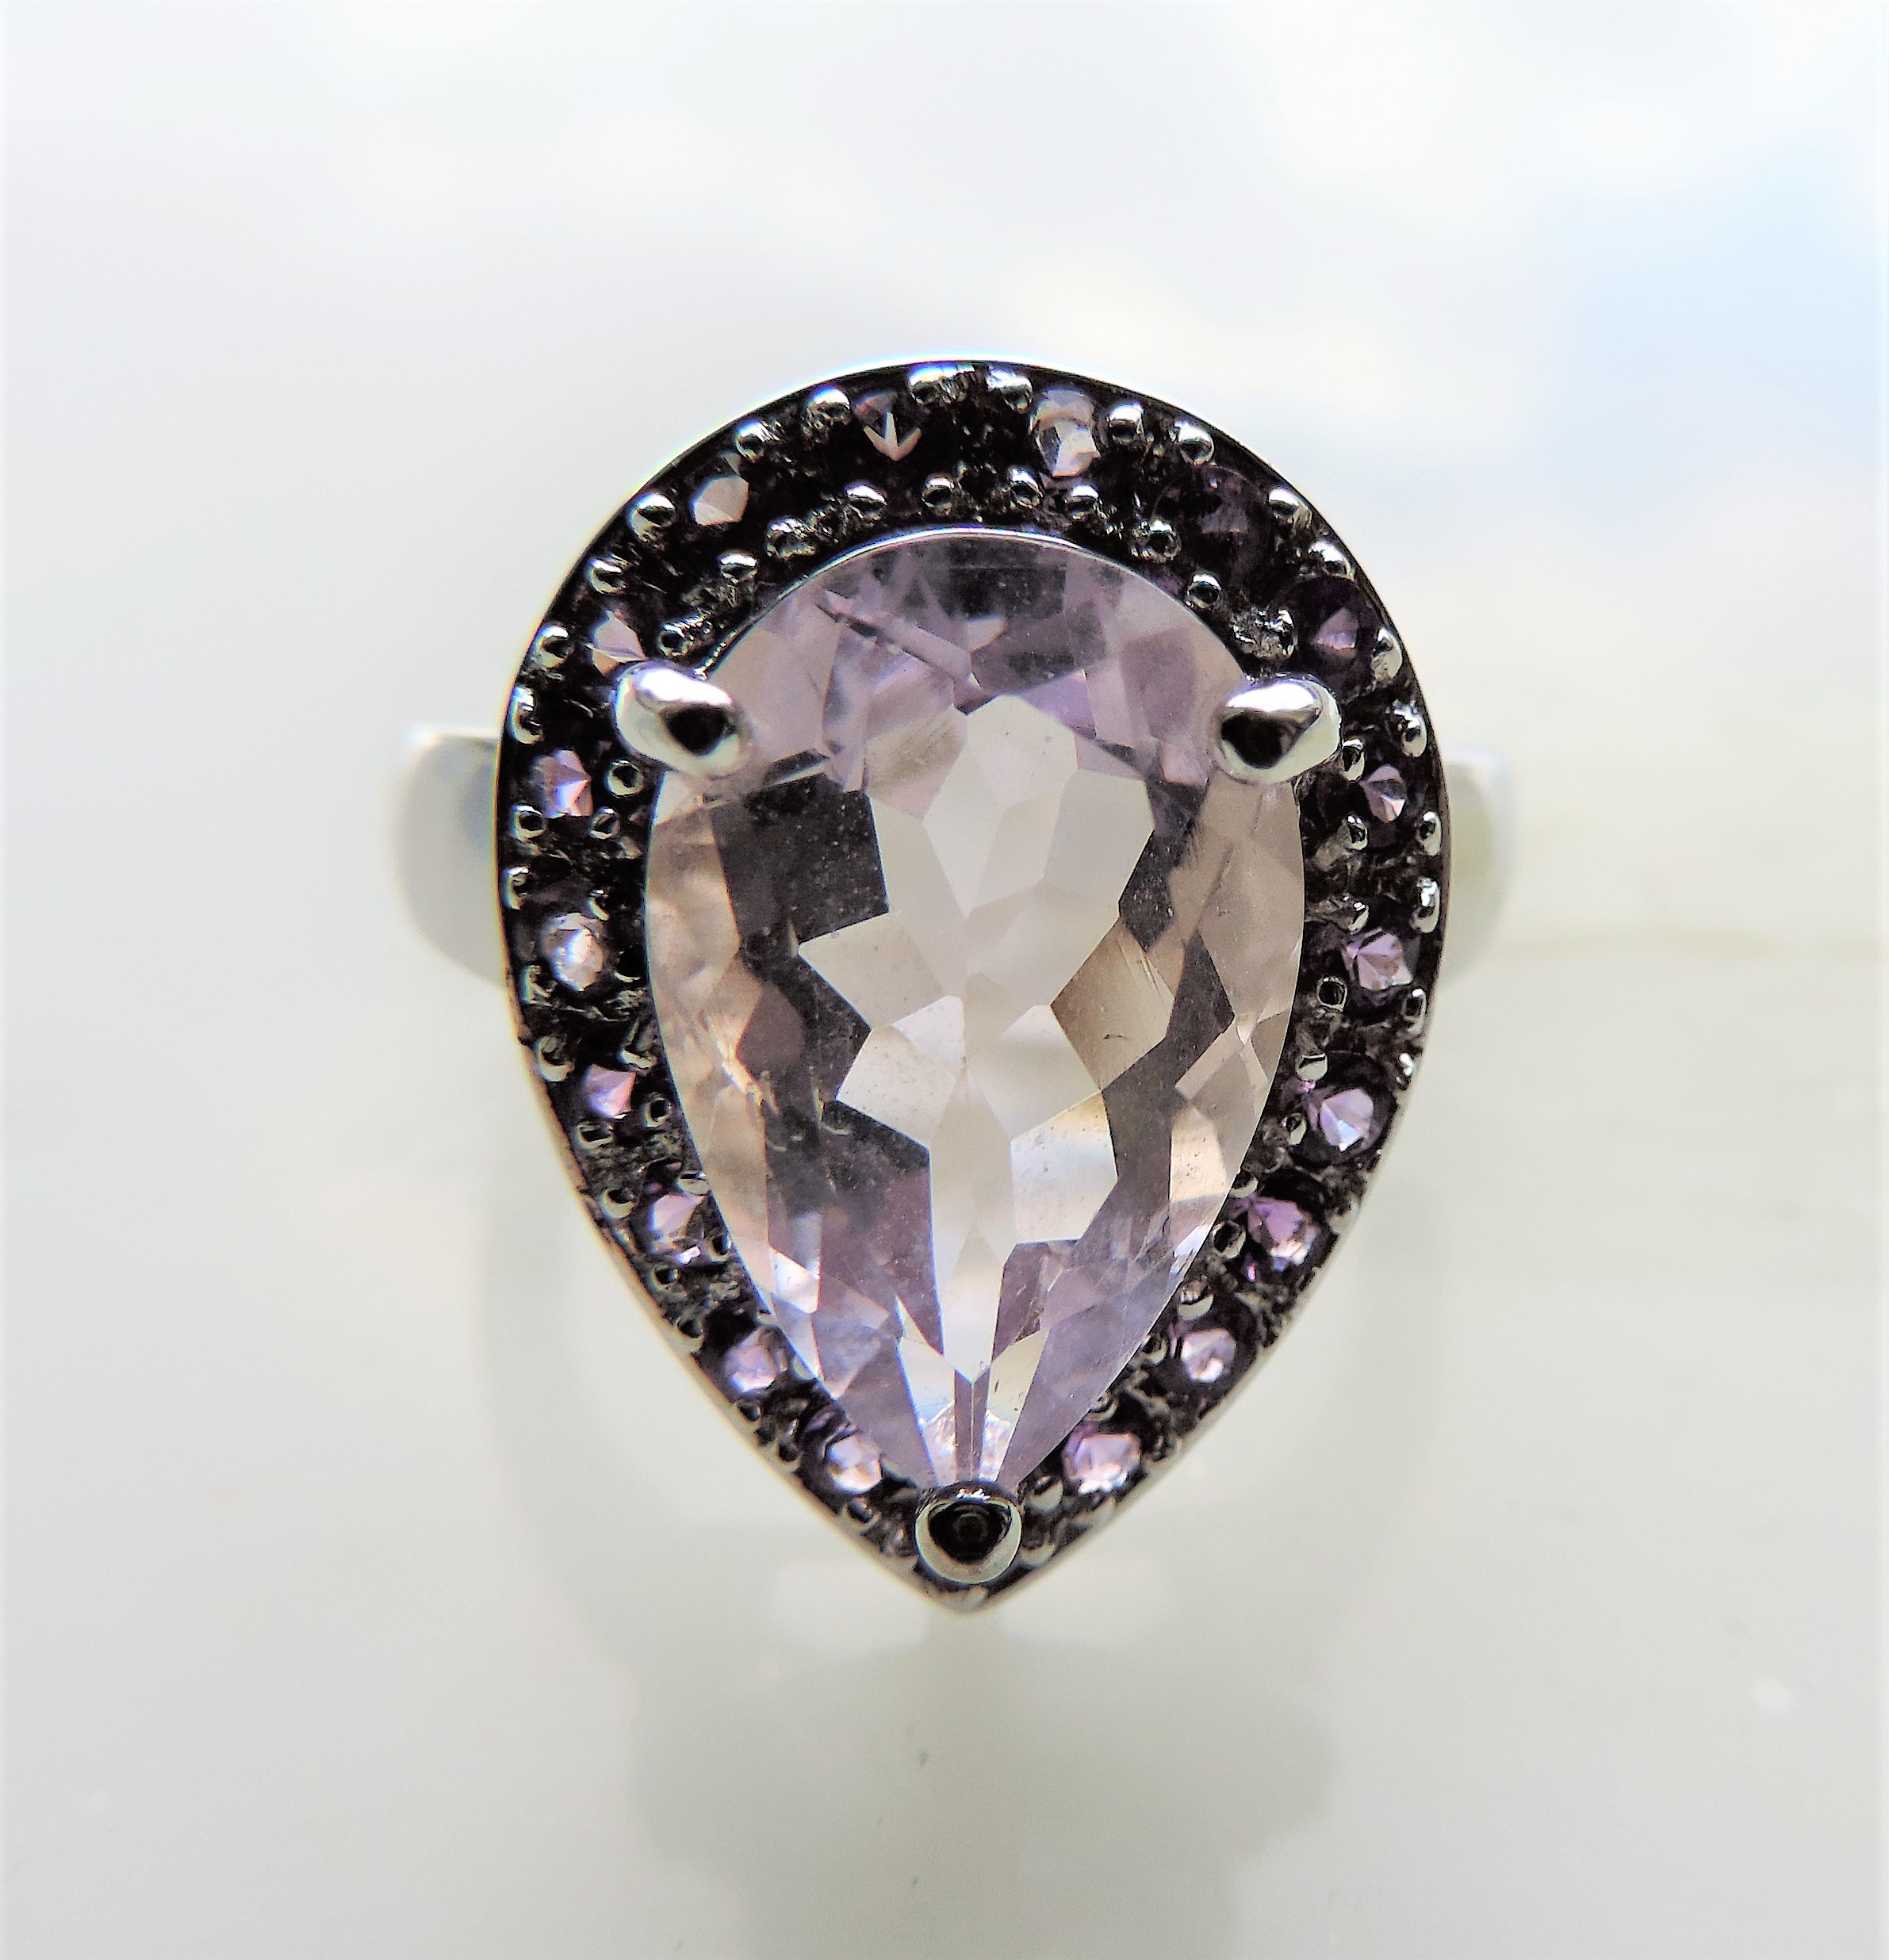 3.5 carat Lavender Quartz Ring - Image 4 of 5